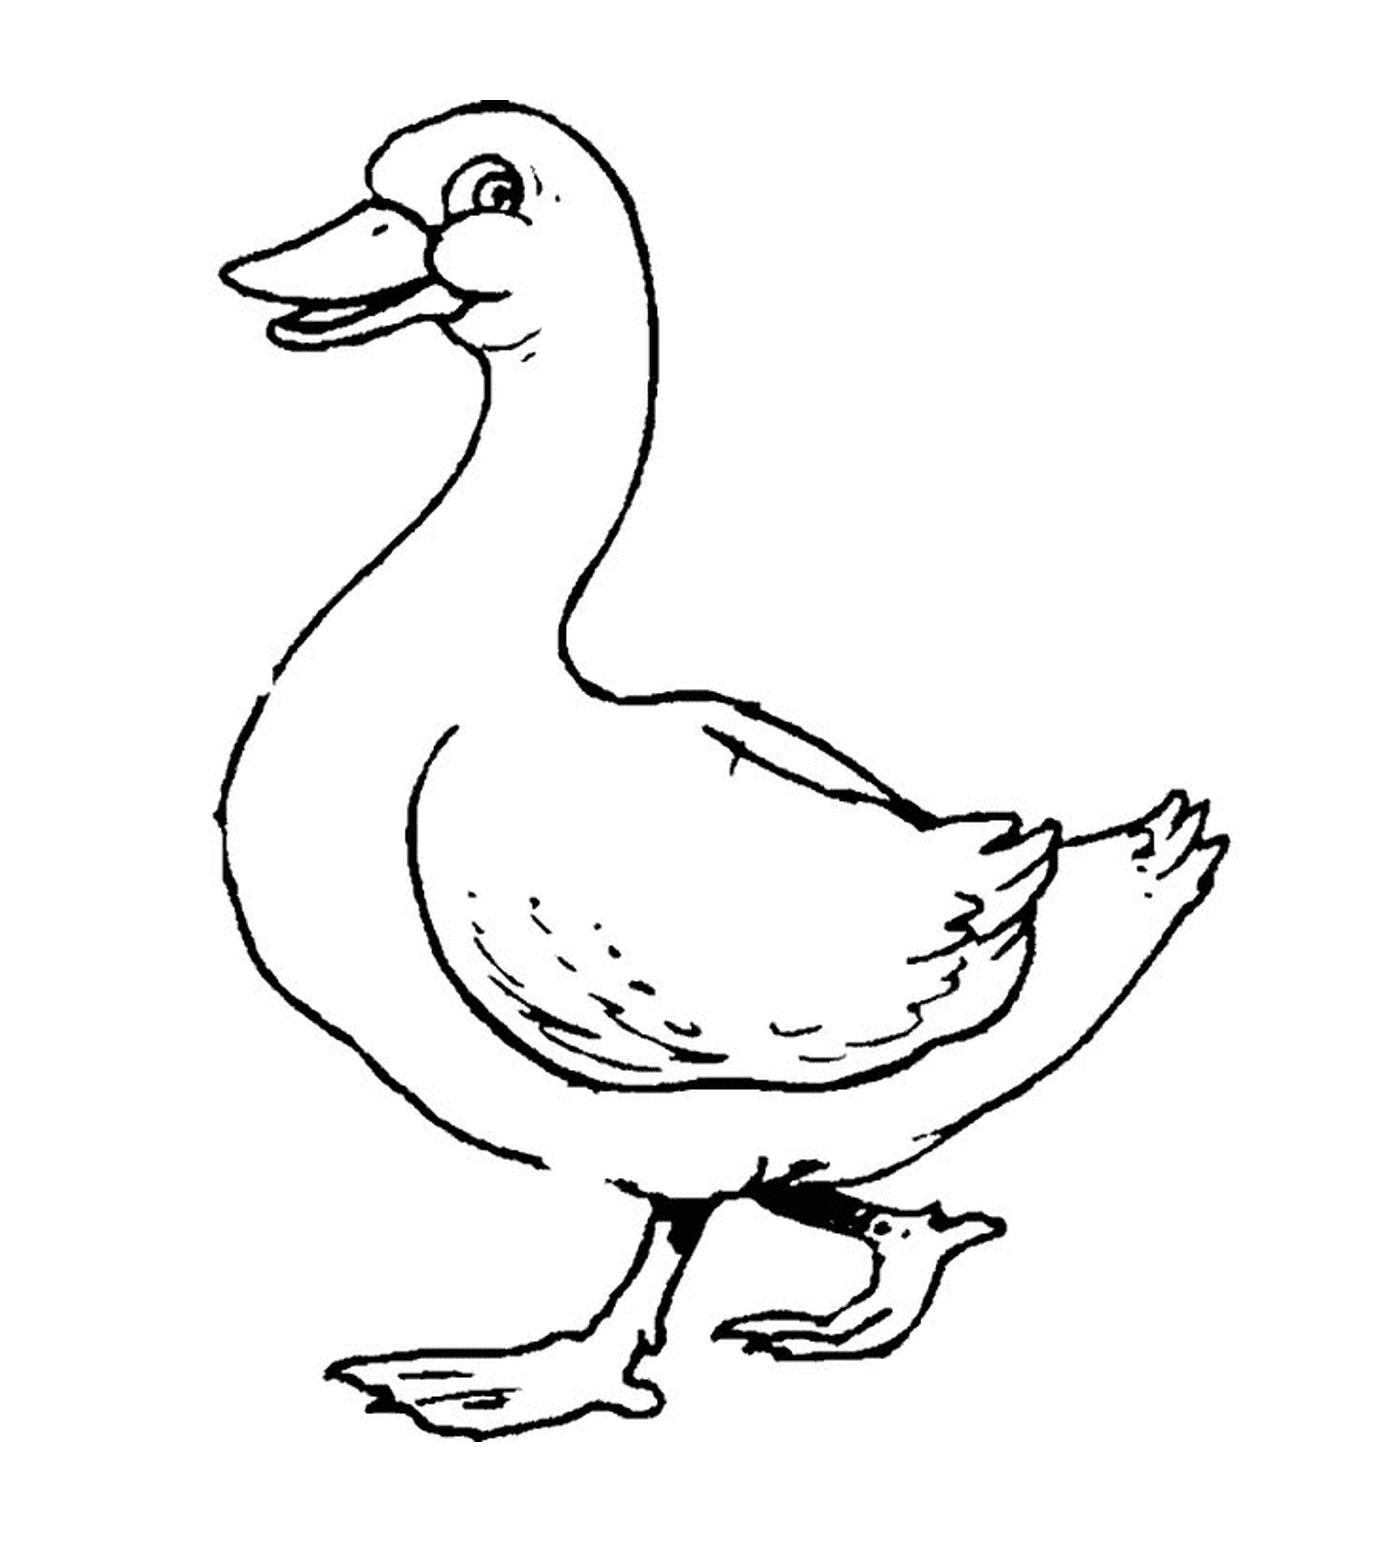  Um pato 